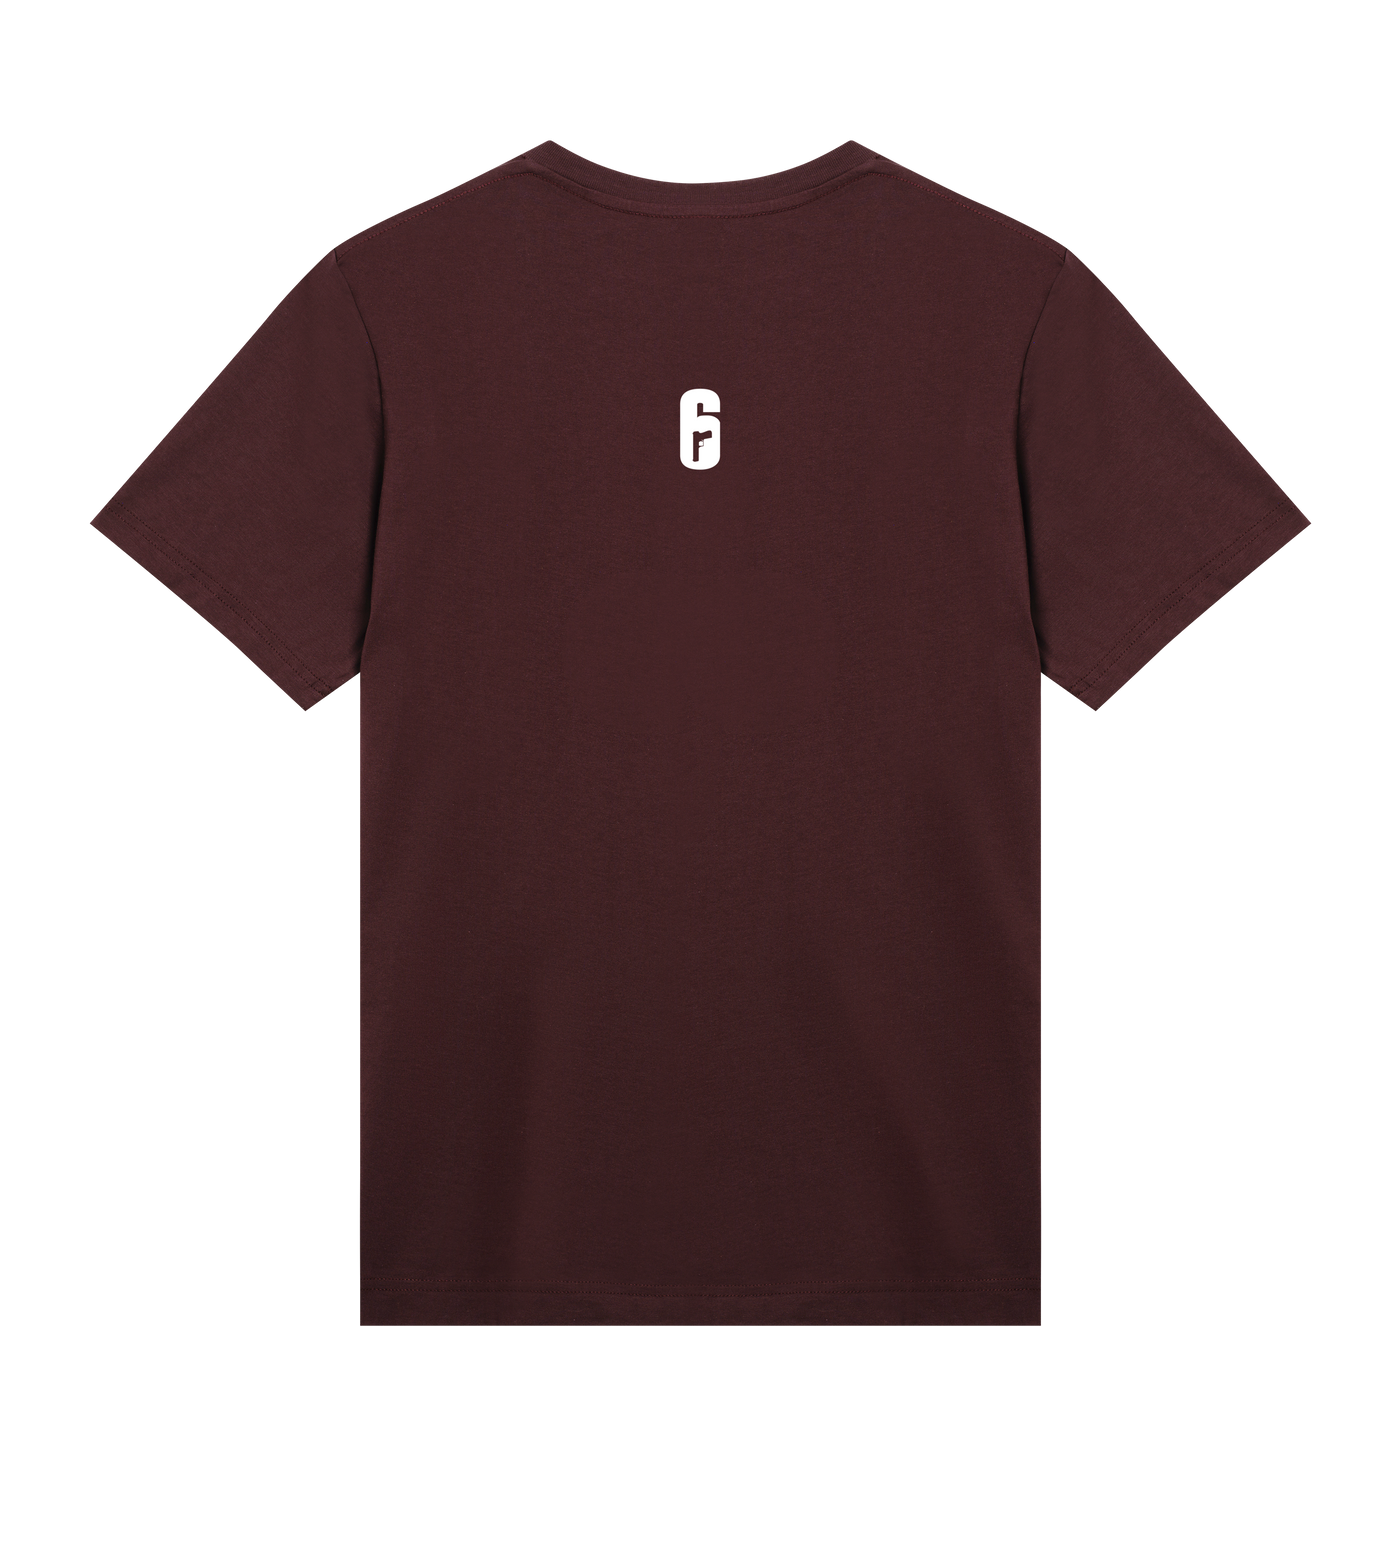 6 SIEGE - Redhammer T-shirt